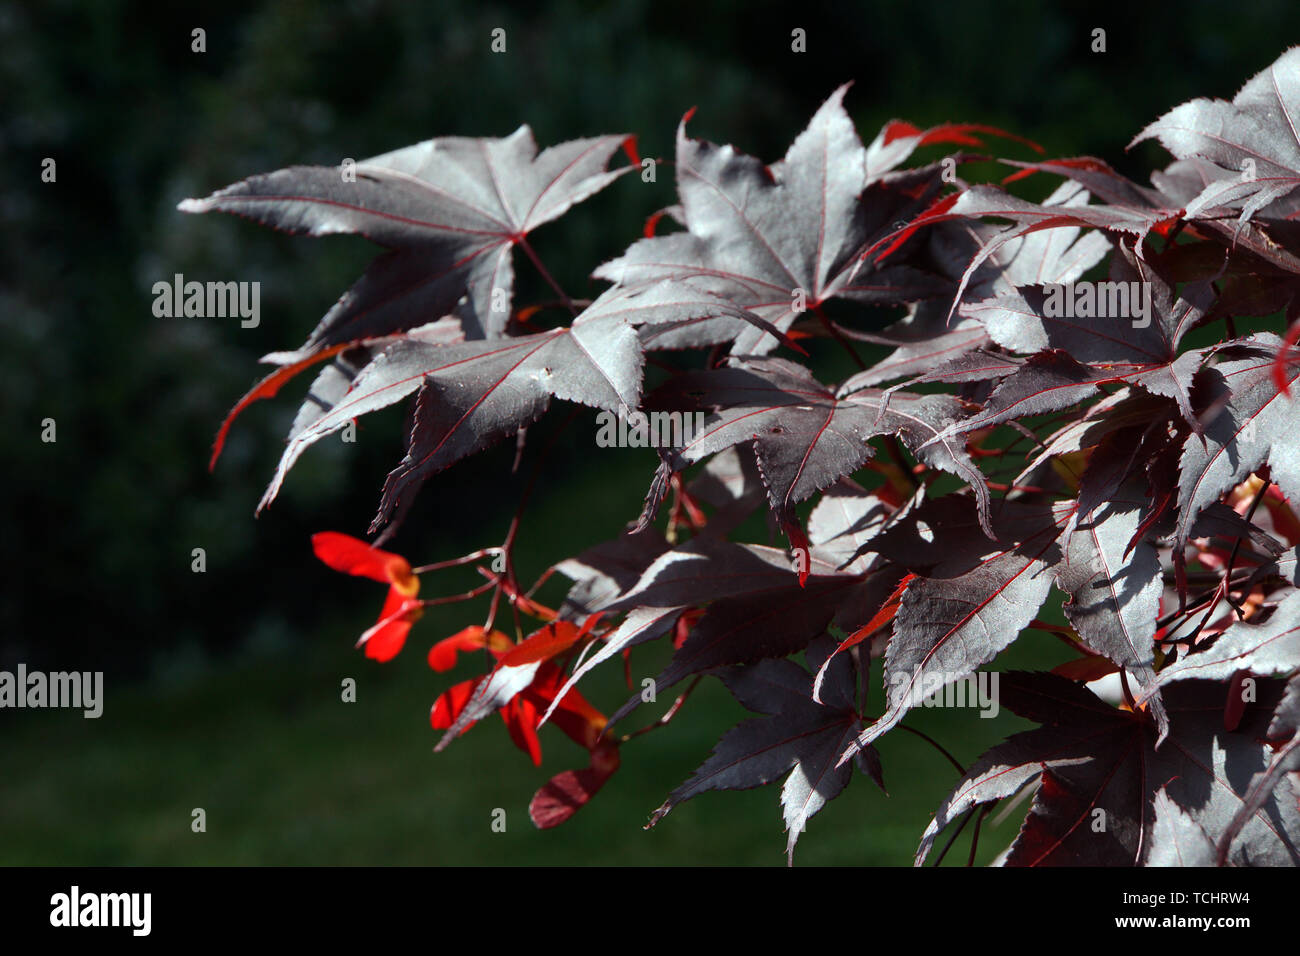 Japanischer Ahorn (Acer japonicum) - Blätter und Früchte Stock Photo